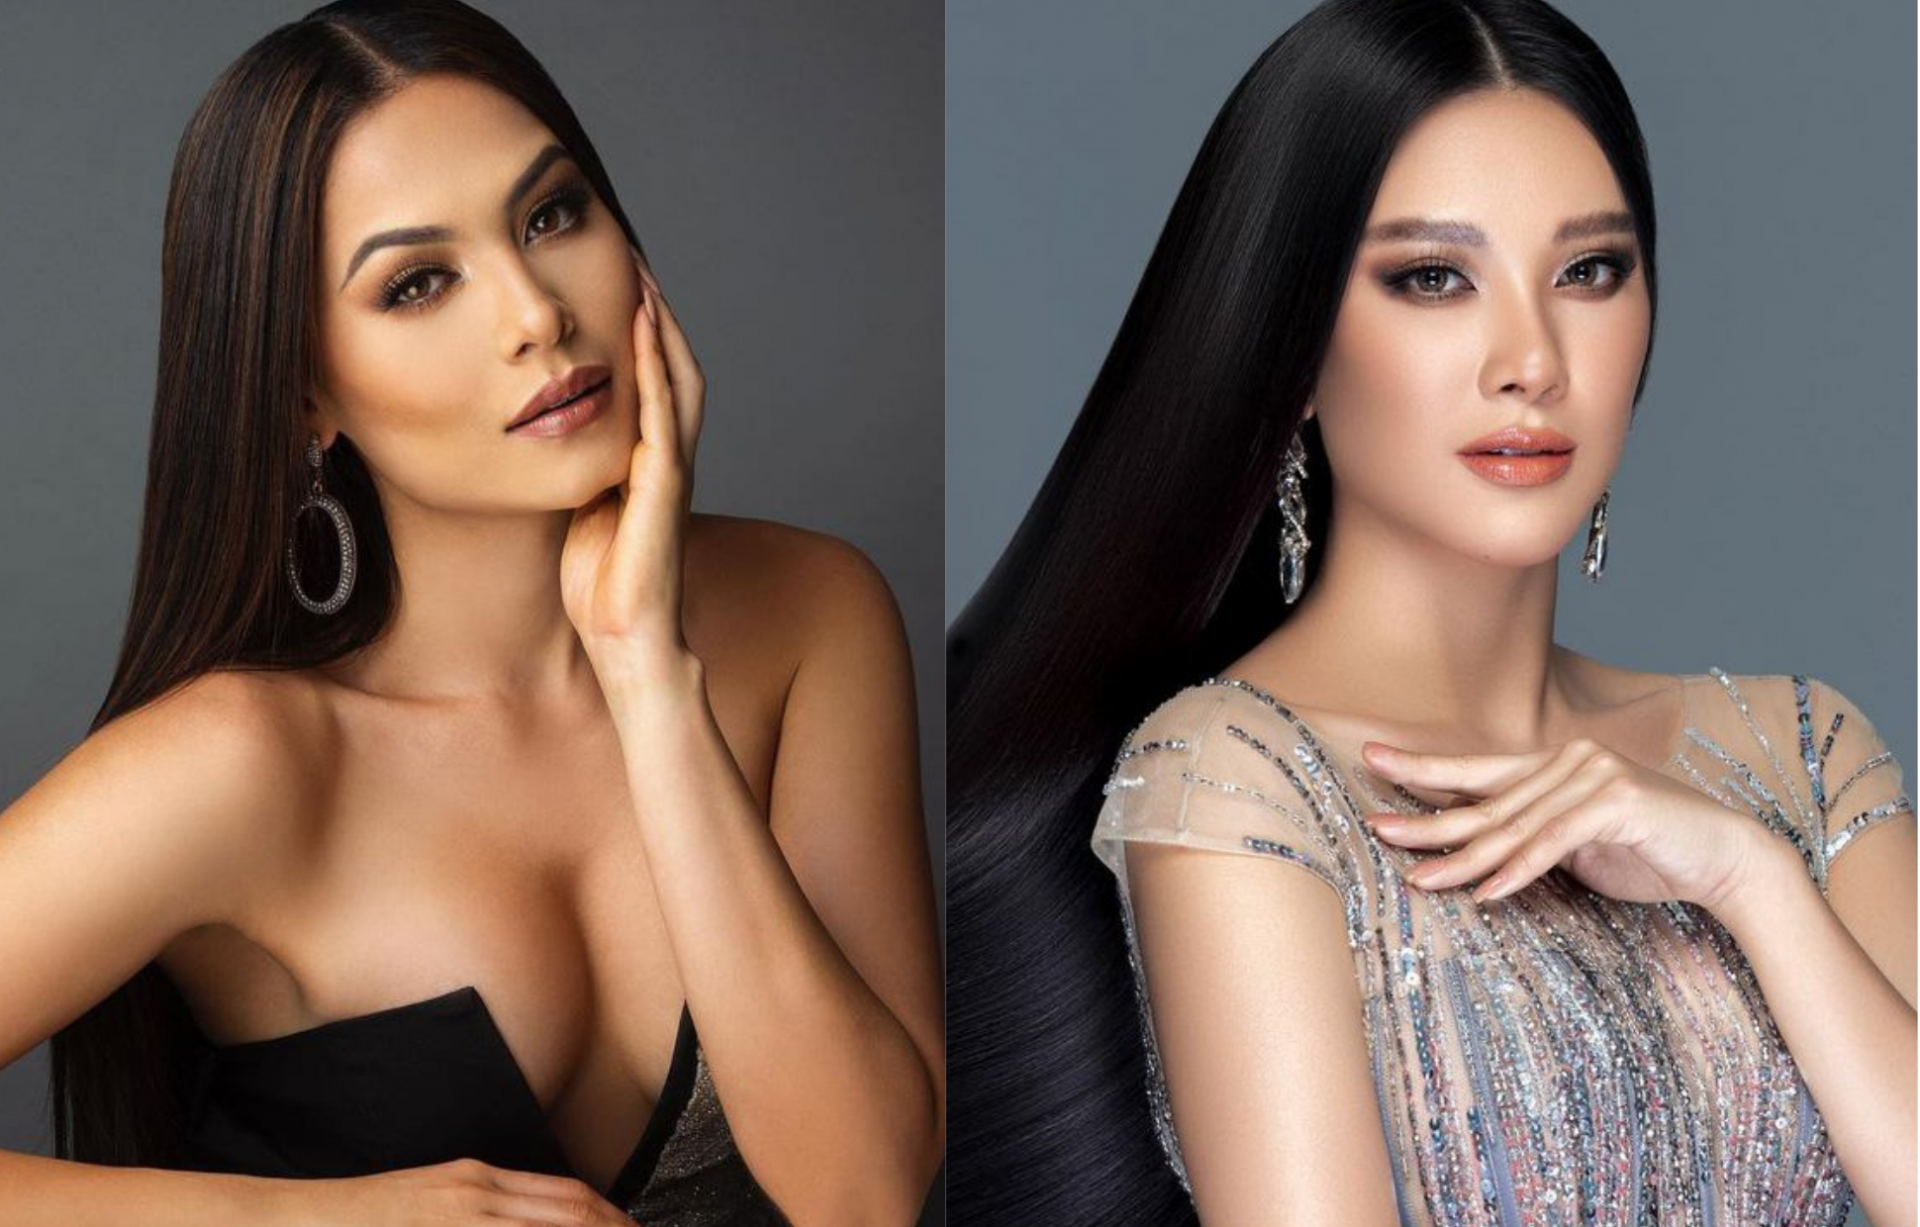 Những điểm trùng hợp kỳ lạ giữa Tân Hoa hậu Hoàn vũ Andrea Meza và Á hậu Kim Duyên - Ảnh 4